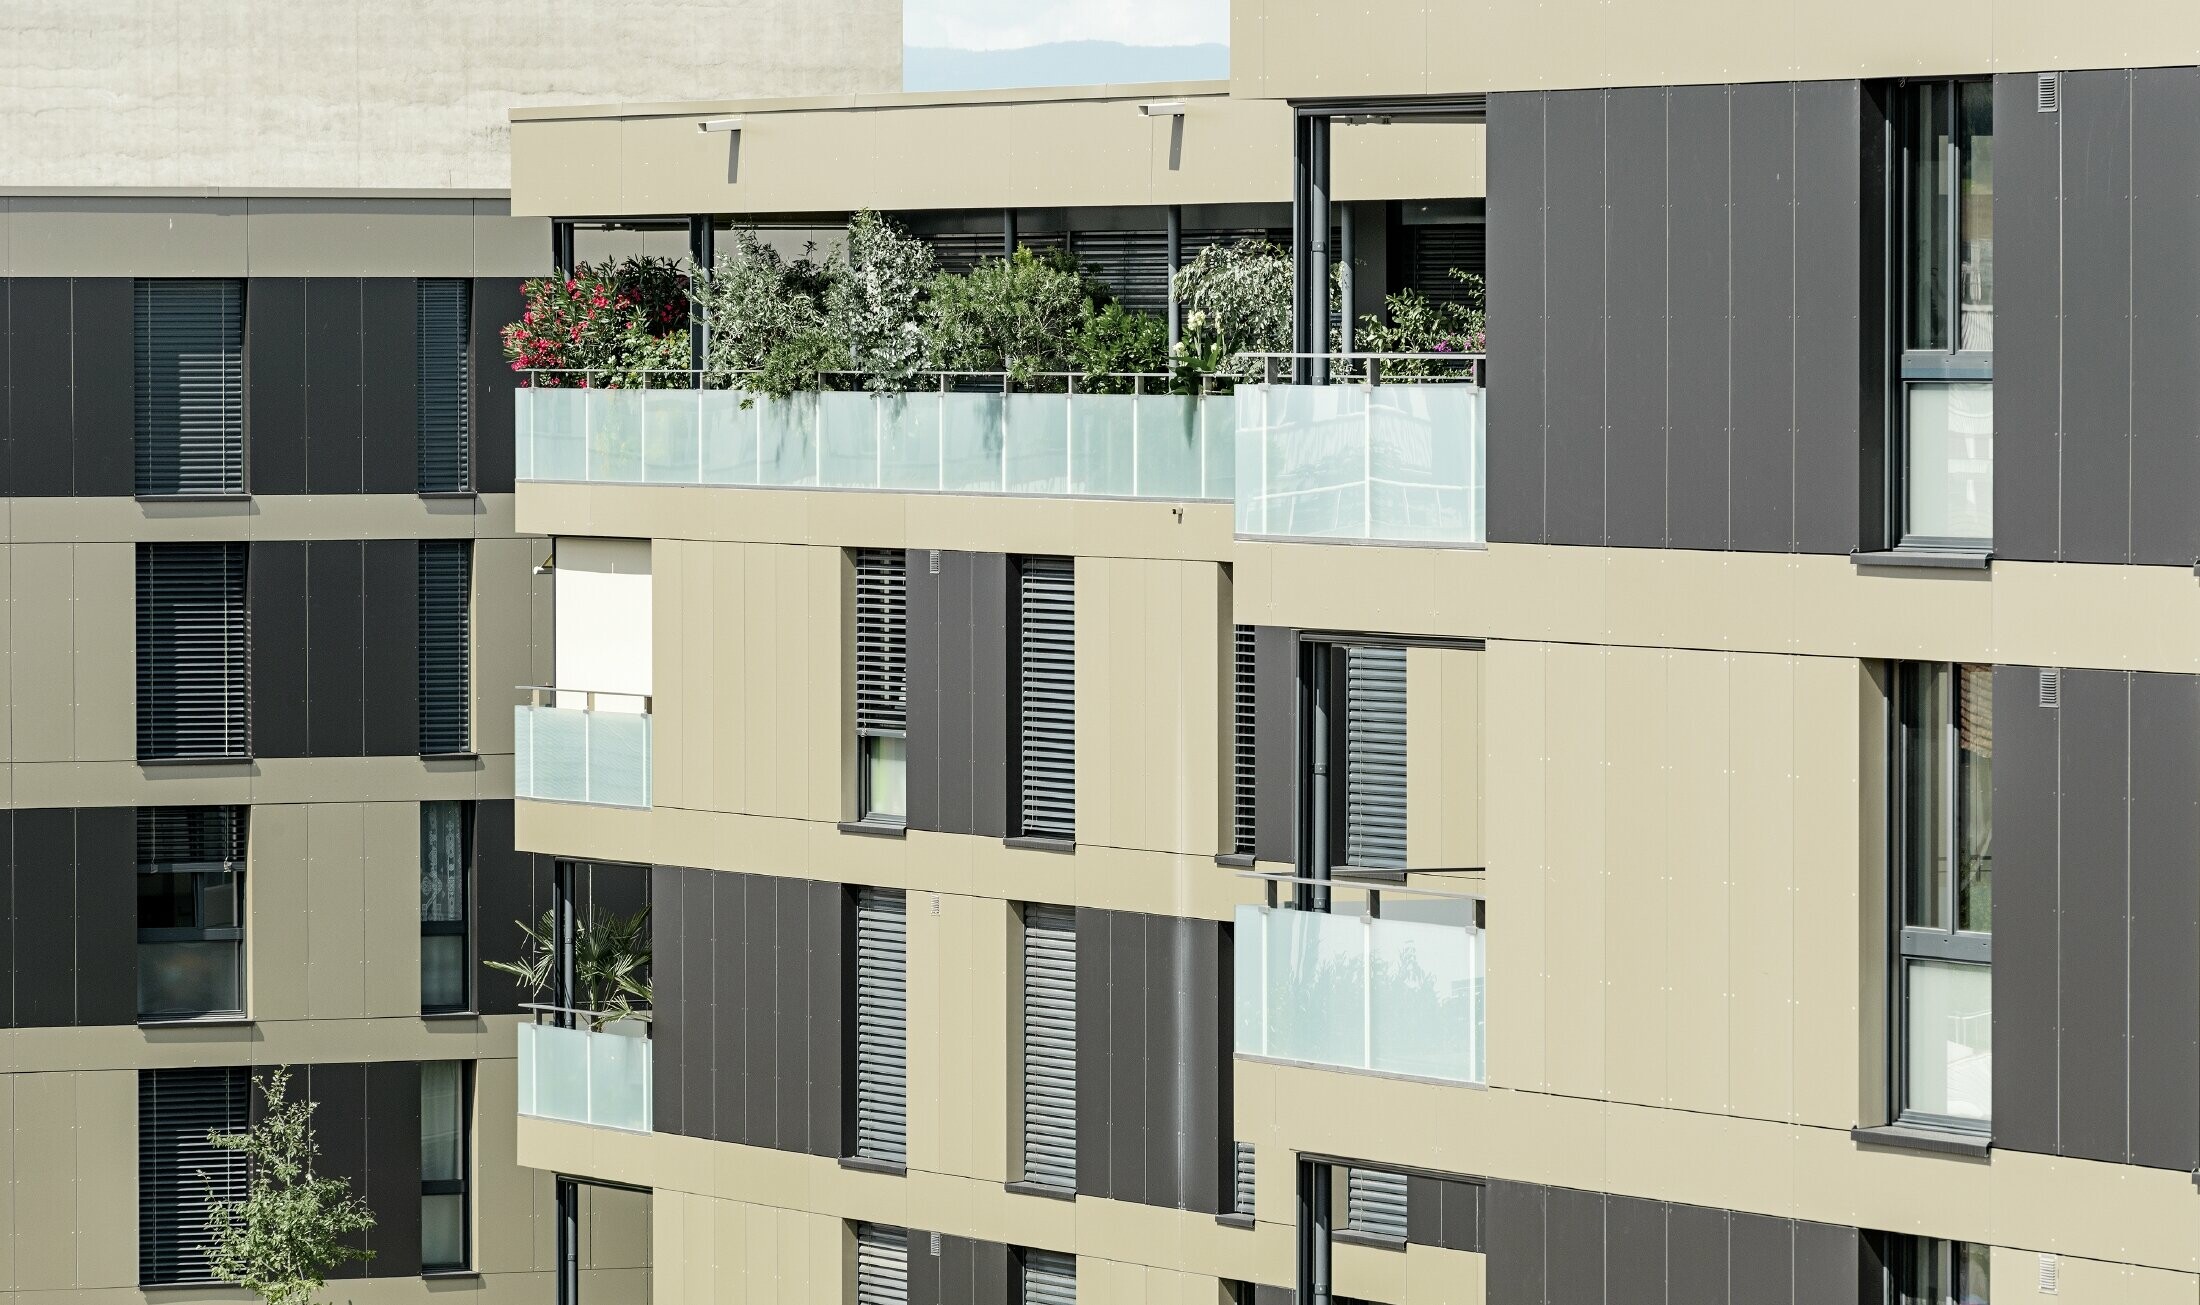 Osiedle domów mieszkalnych w kształcie kostek z elewacją aluminiową w kolorze brązu z czarno-szarymi elementami